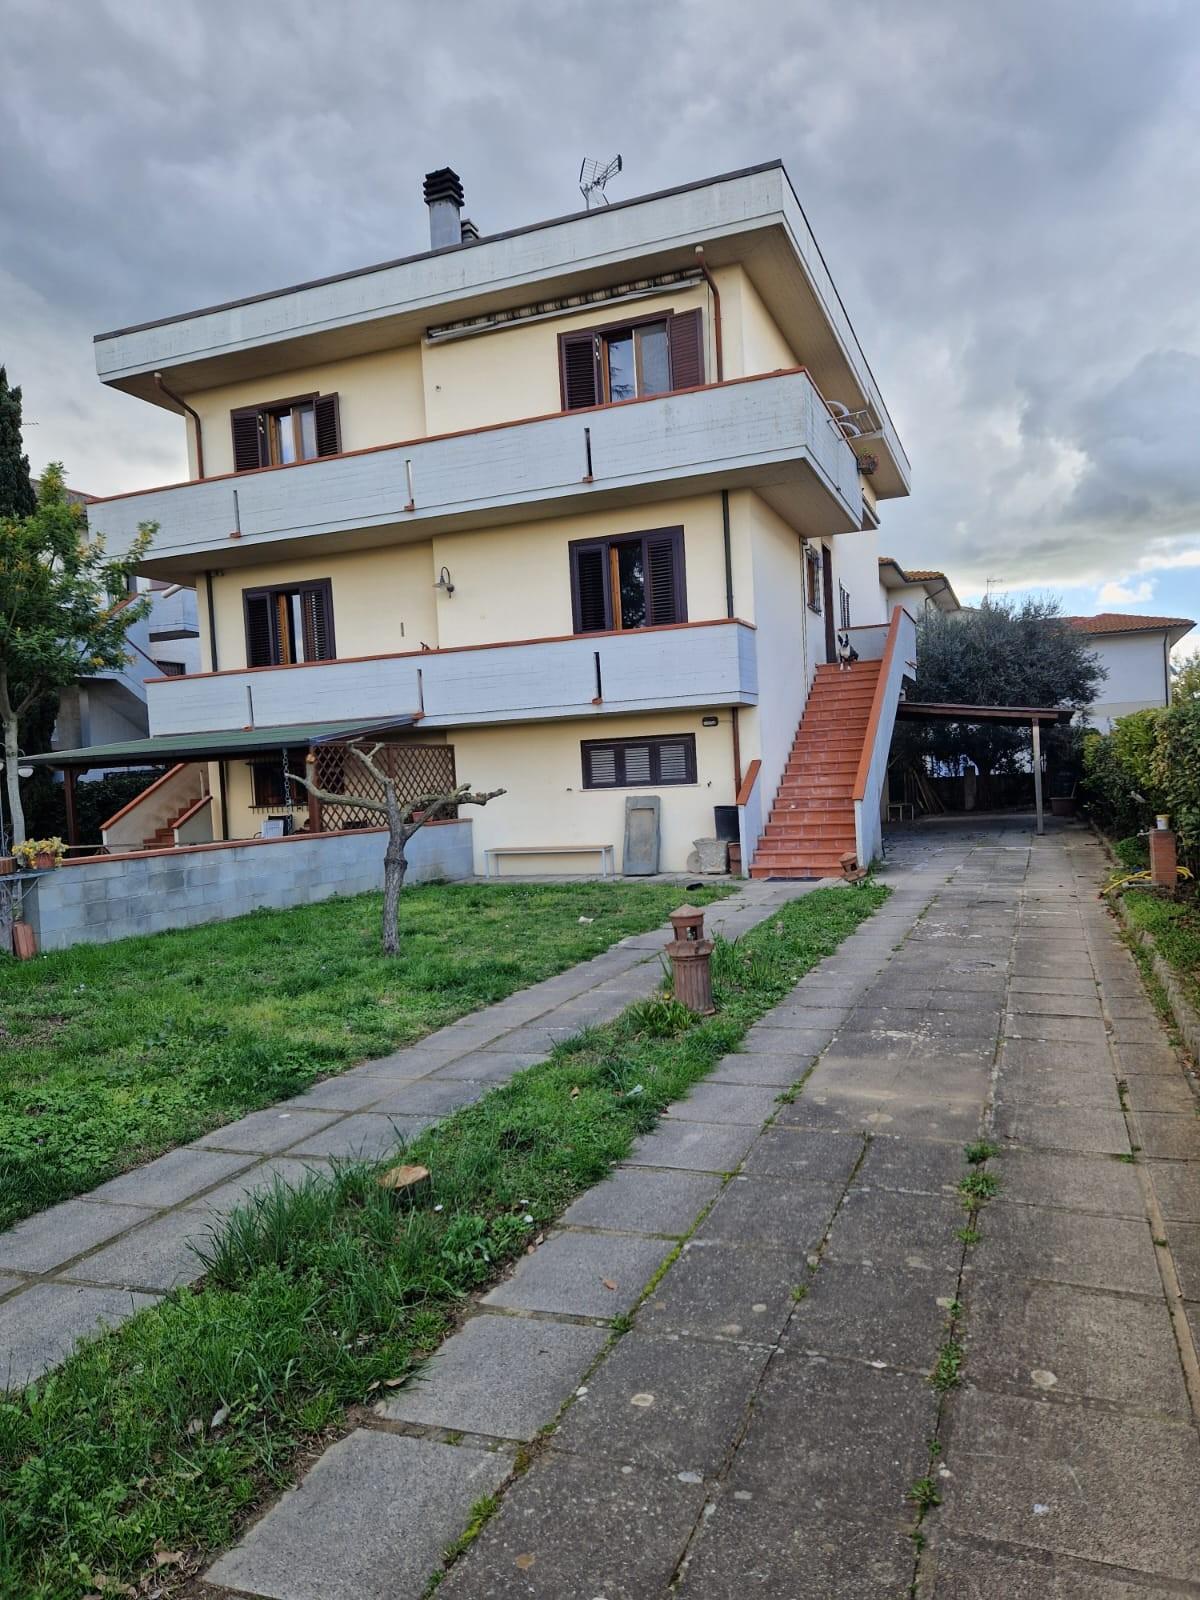 Appartamento in vendita a Casciana Terme Lari, 5 locali, prezzo € 220.000 | PortaleAgenzieImmobiliari.it